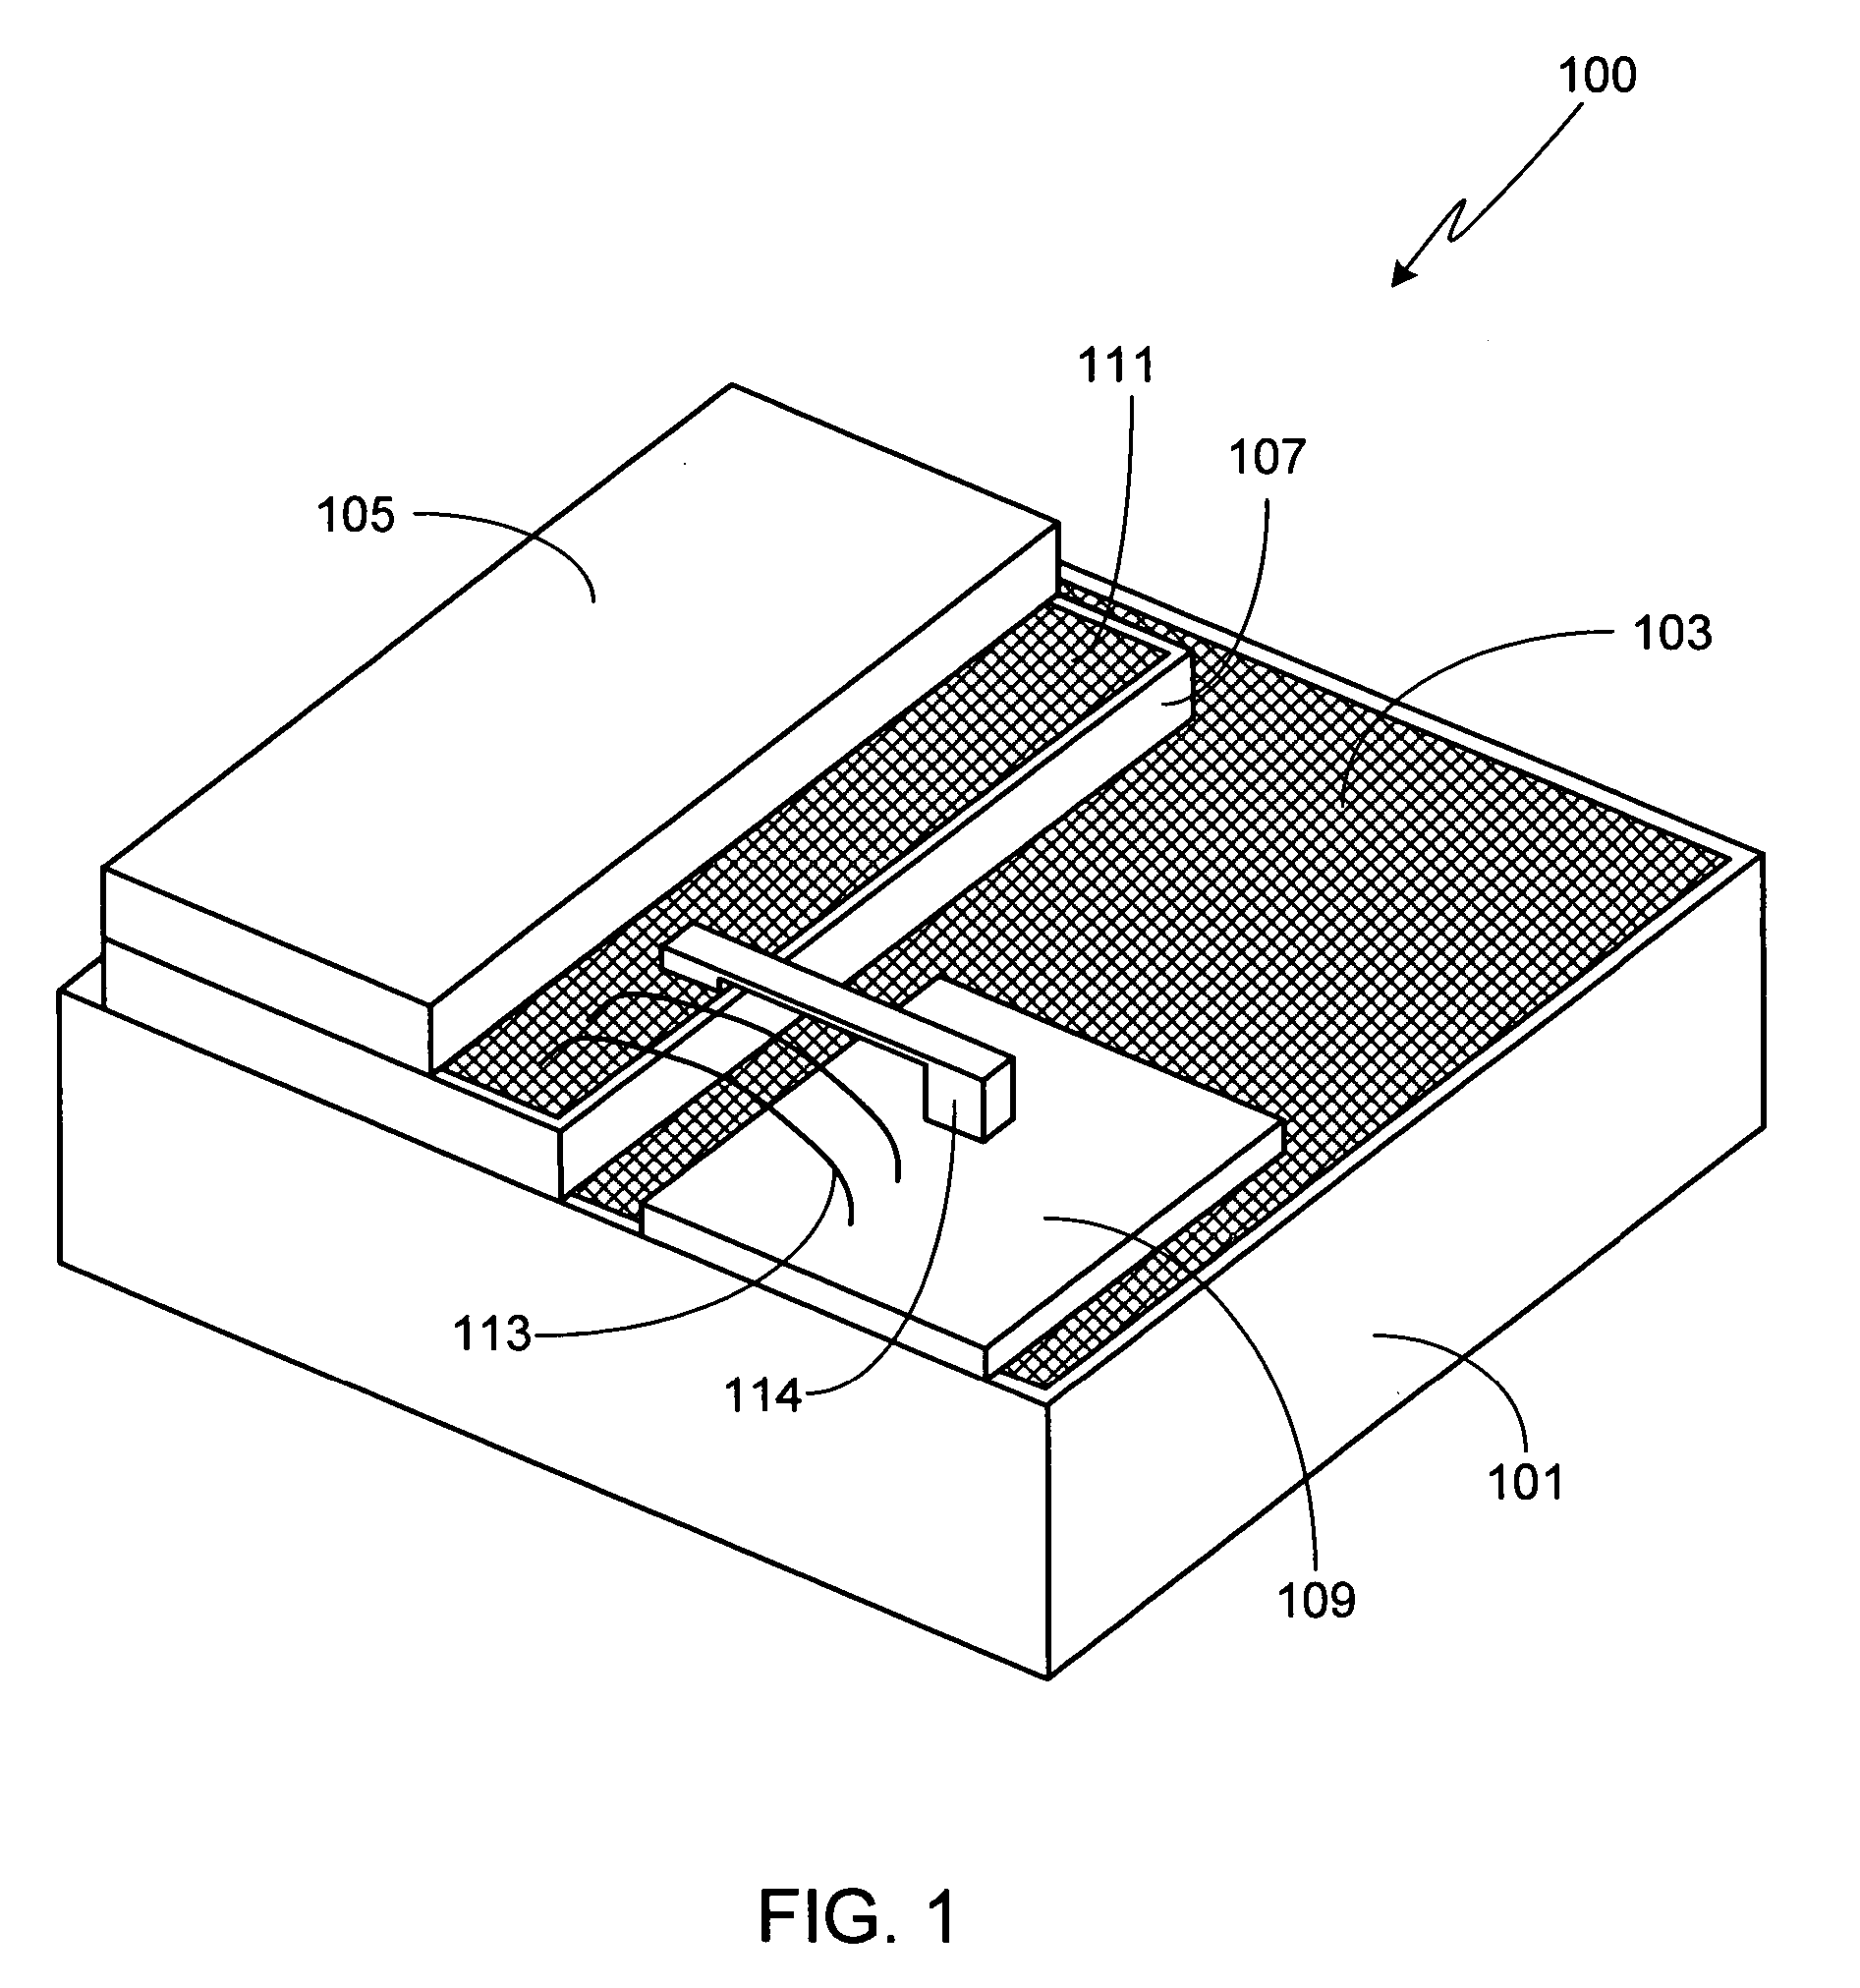 Laser diode package utilizing a laser diode stack